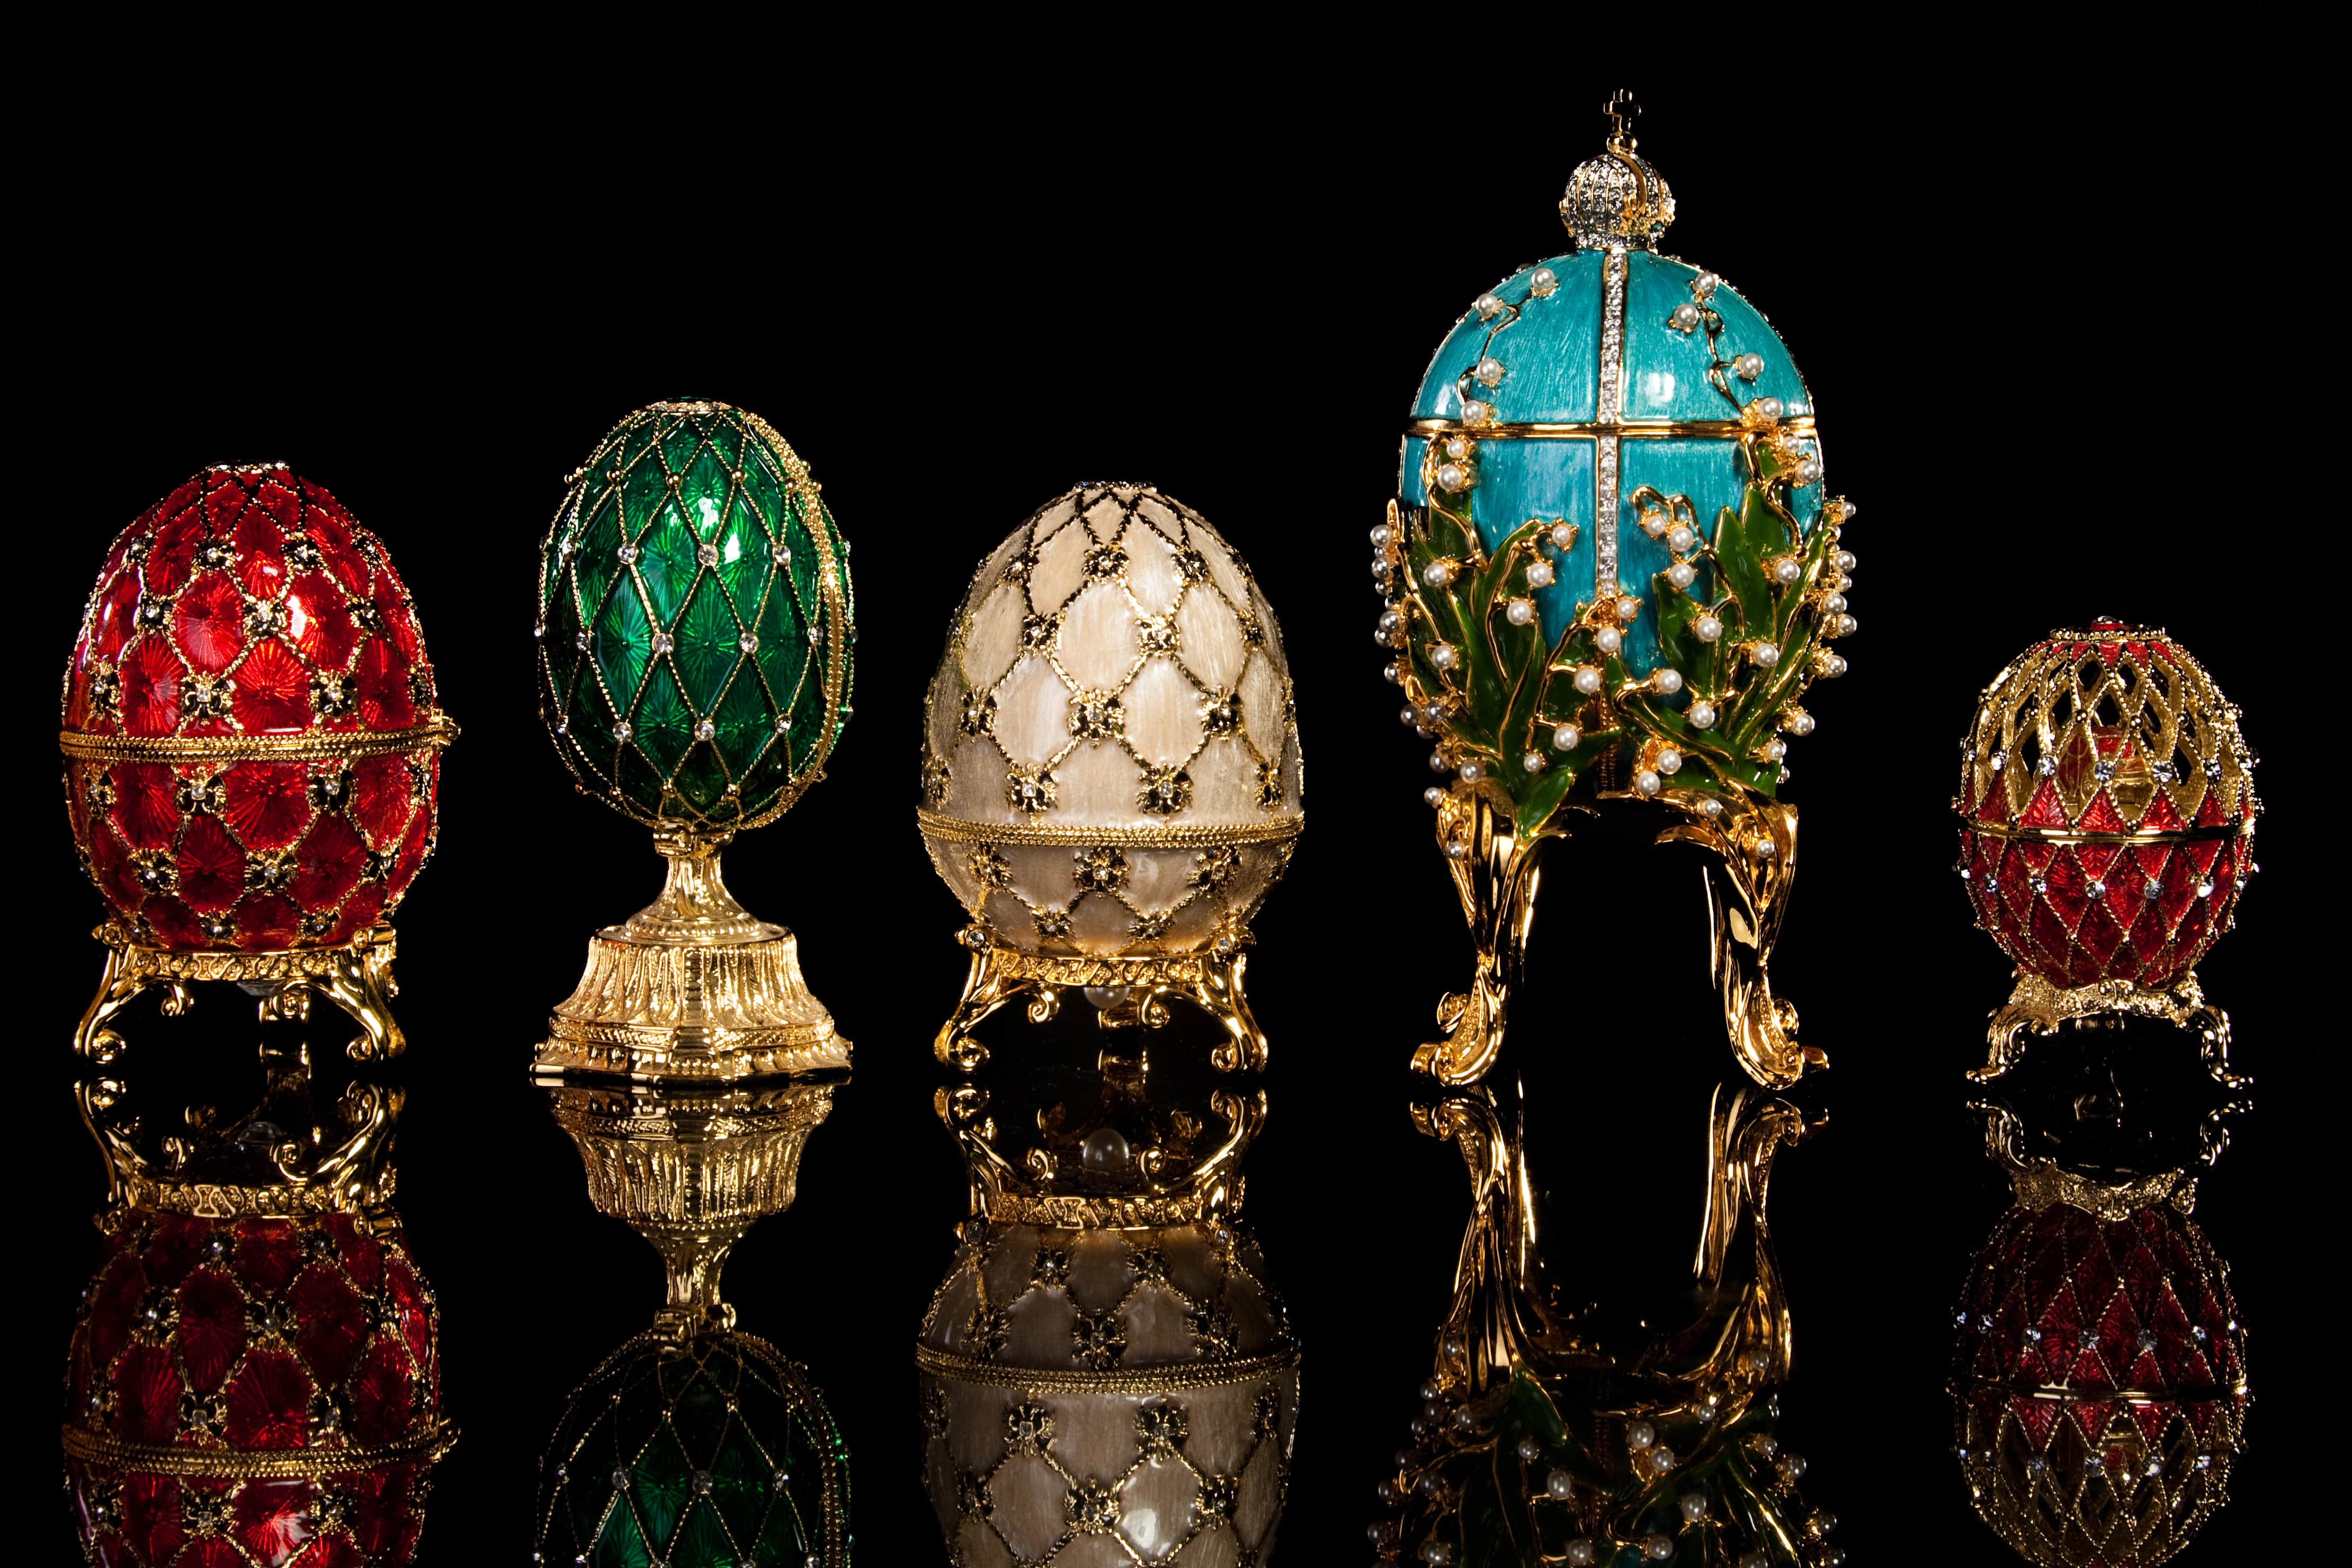 La storia delle uova Fabergé e la creazione di gioielli unici e rari -  Holyblog